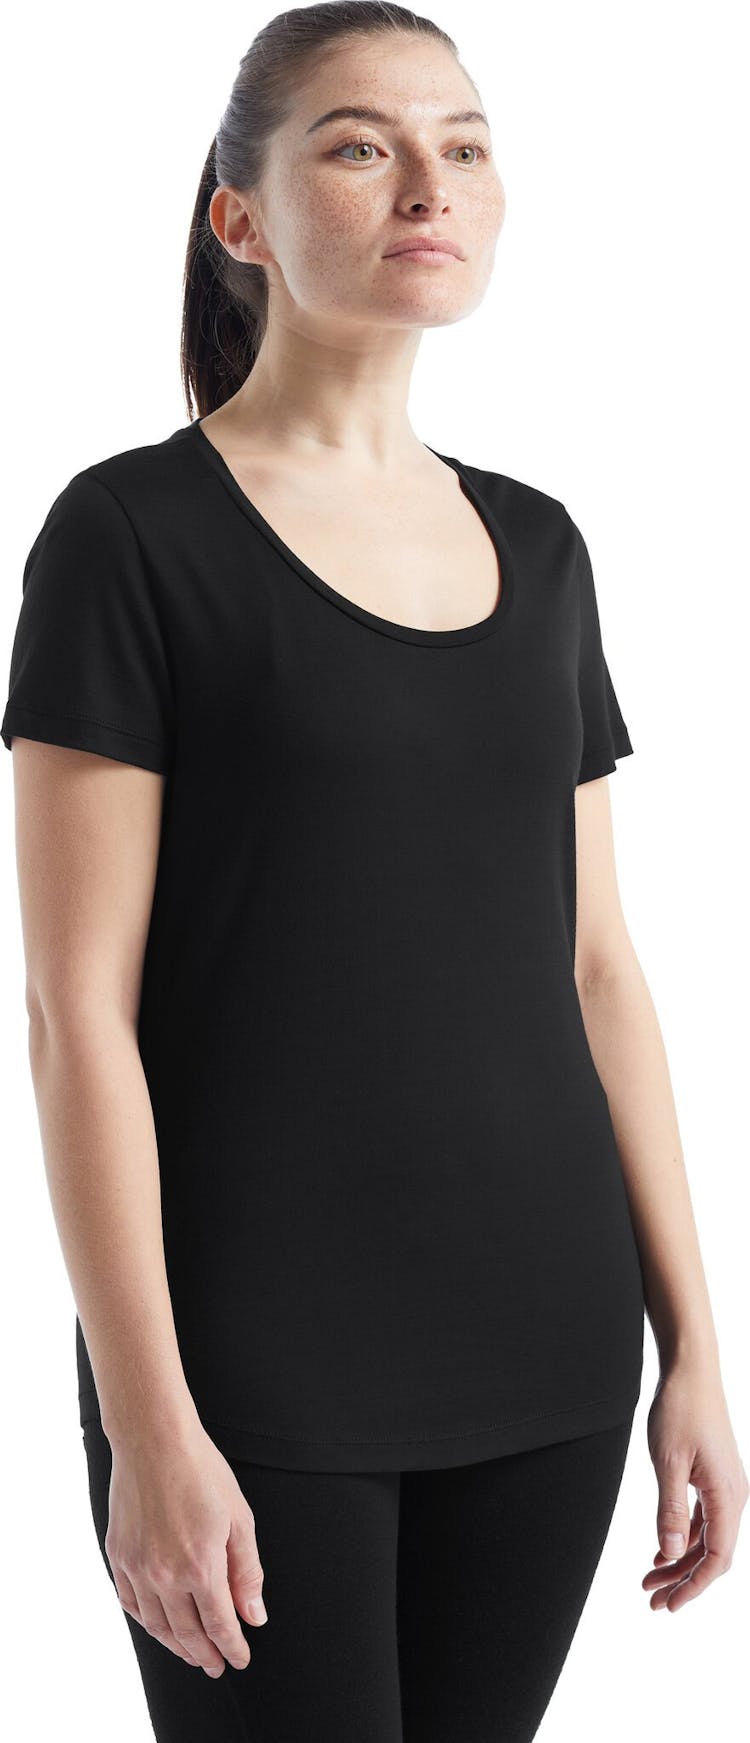 Numéro de l'image de la galerie de produits 9 pour le produit T-shirt à encolure dégagée à manches courtes Sphere II - Femme